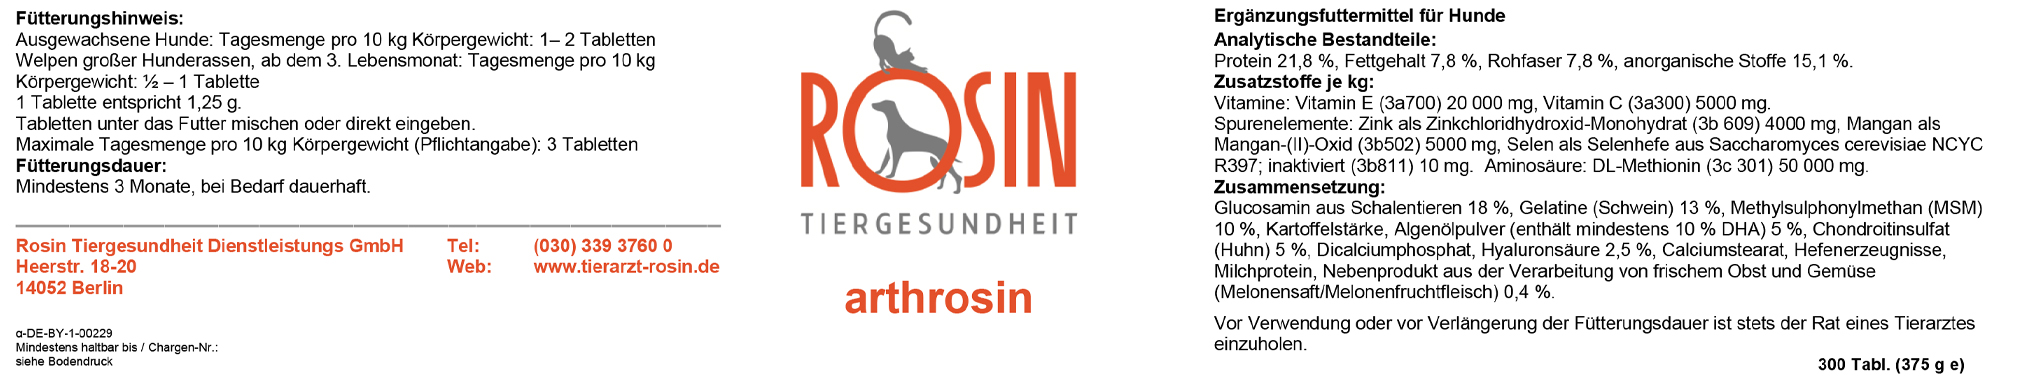 Tierarzt Rosin - Rosin Tiergesundheit - arthrosin - Ergänzungsfuttermittel für Hunde zur Unterstützung der Gelenksgesundheit 300